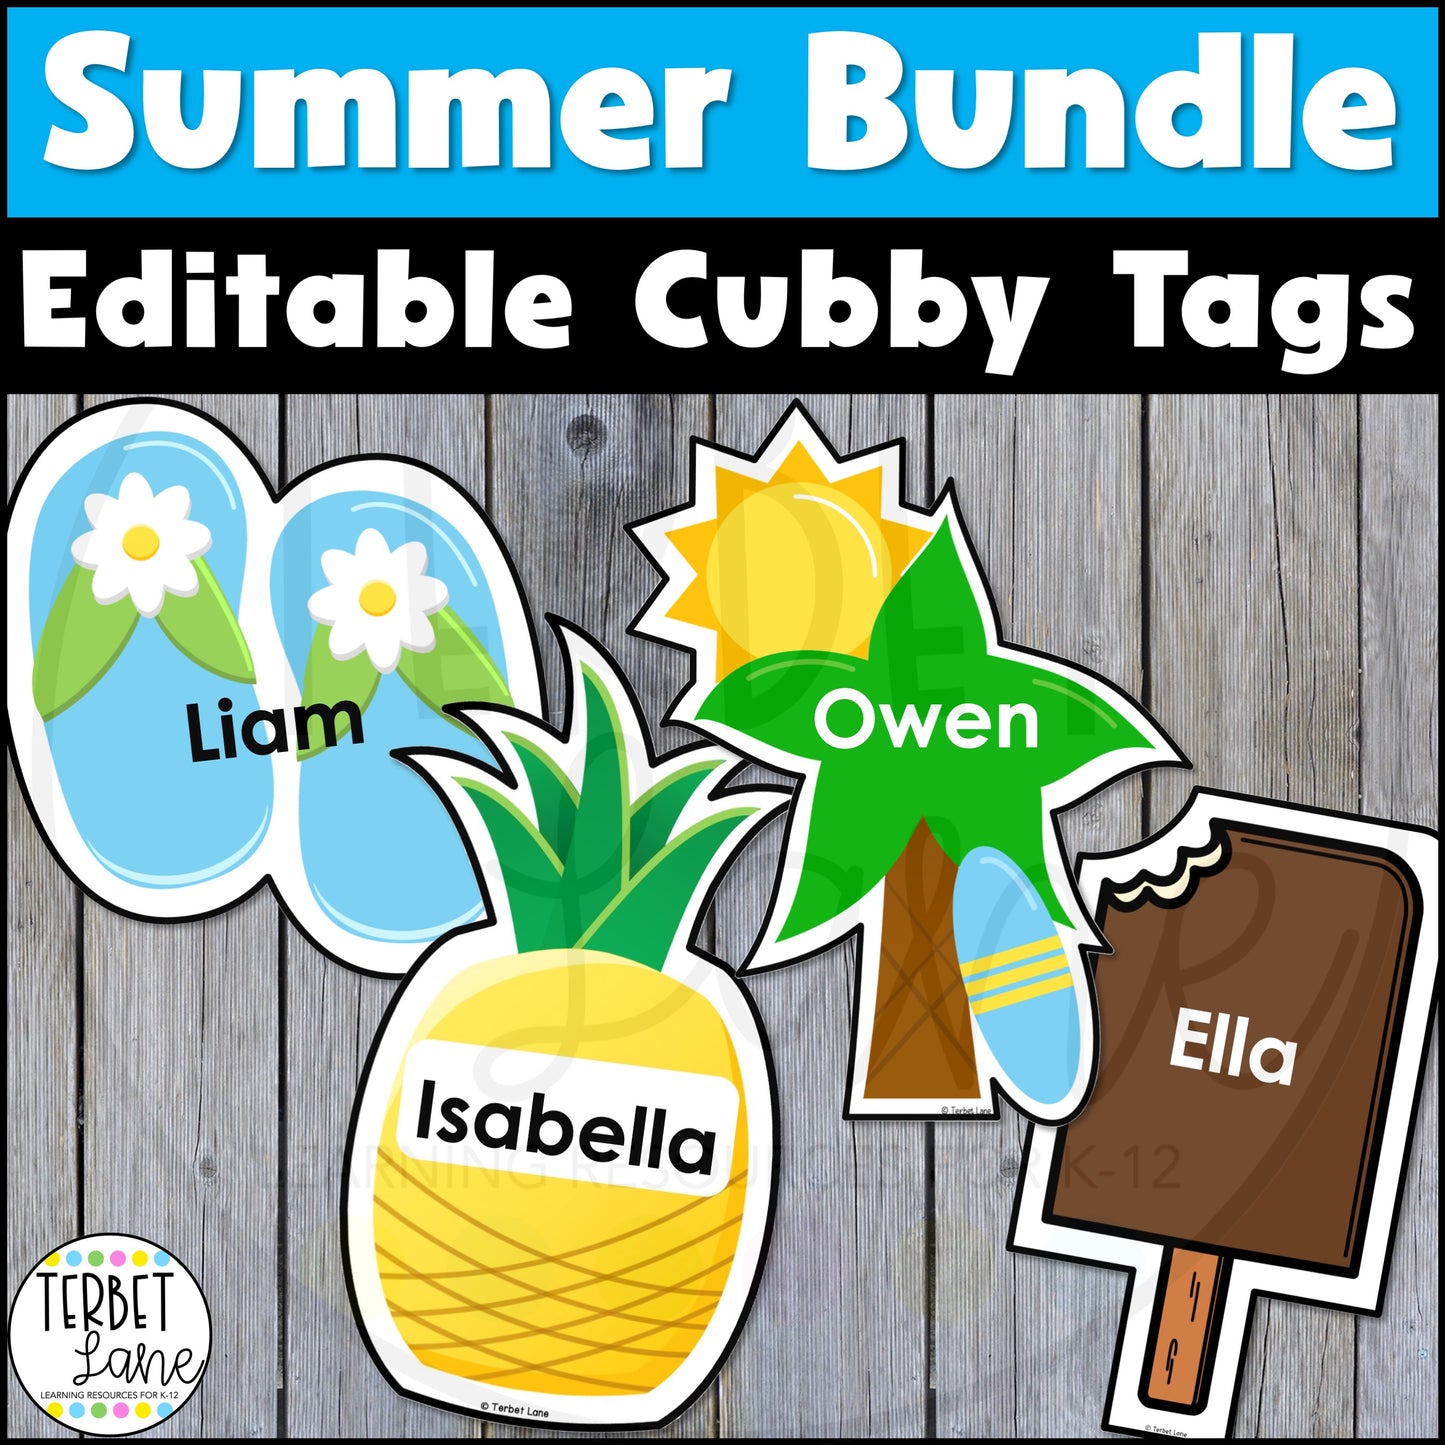 Editable Pineapple Cubby Tags + Editable Popsicle Cubby Tags + Editable Summer Beach Cubby Tags | Locker Labels + Editable Summer Cubby Tags Bundle